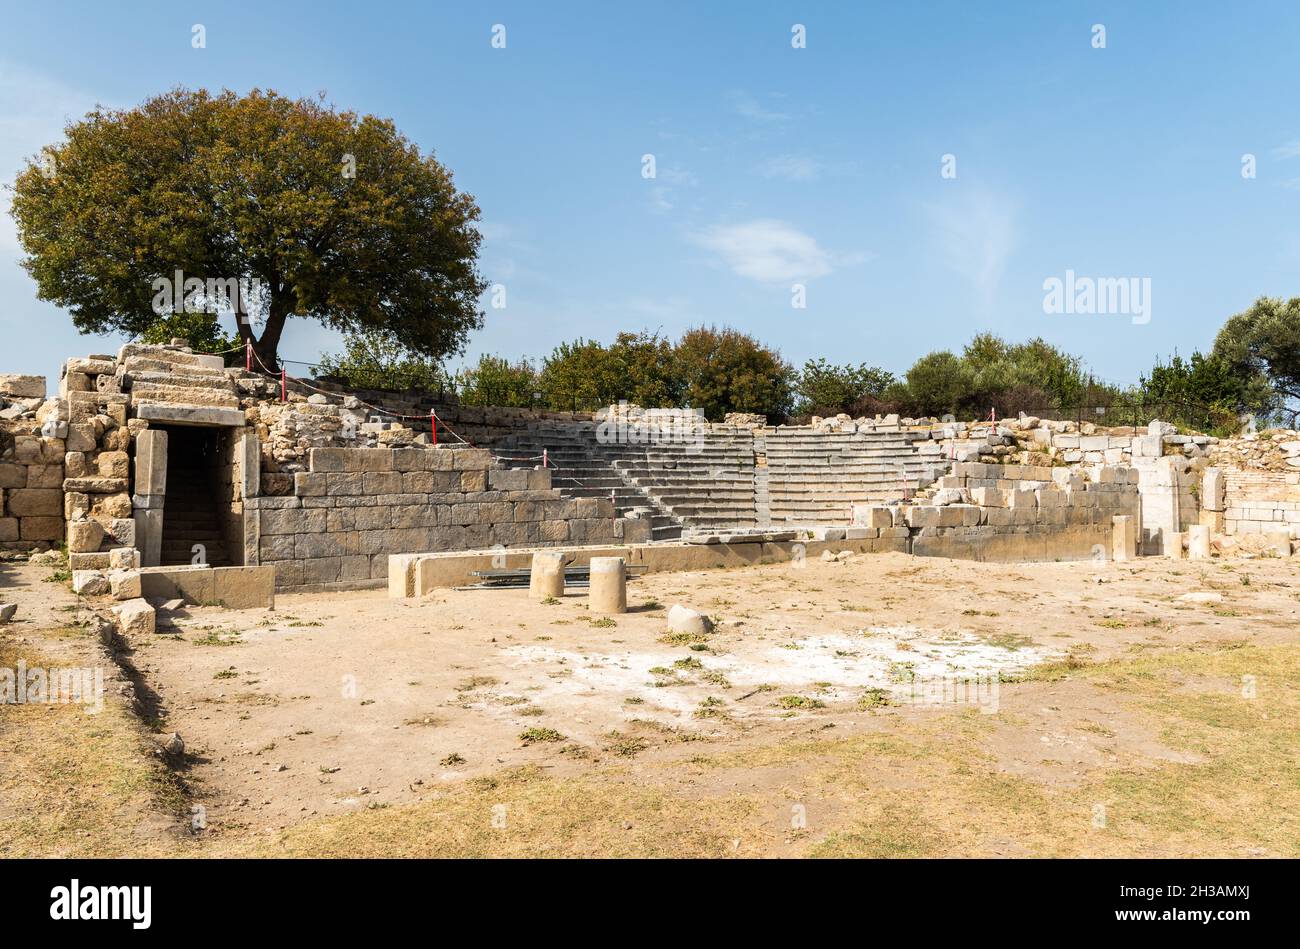 Ruines de la maison du conseil de Bouleutérion à l'ancienne ville grecque Teos dans la province d'Izmir en Turquie.Teos était une ancienne ville grecque sur la côte d'Ionia. Banque D'Images